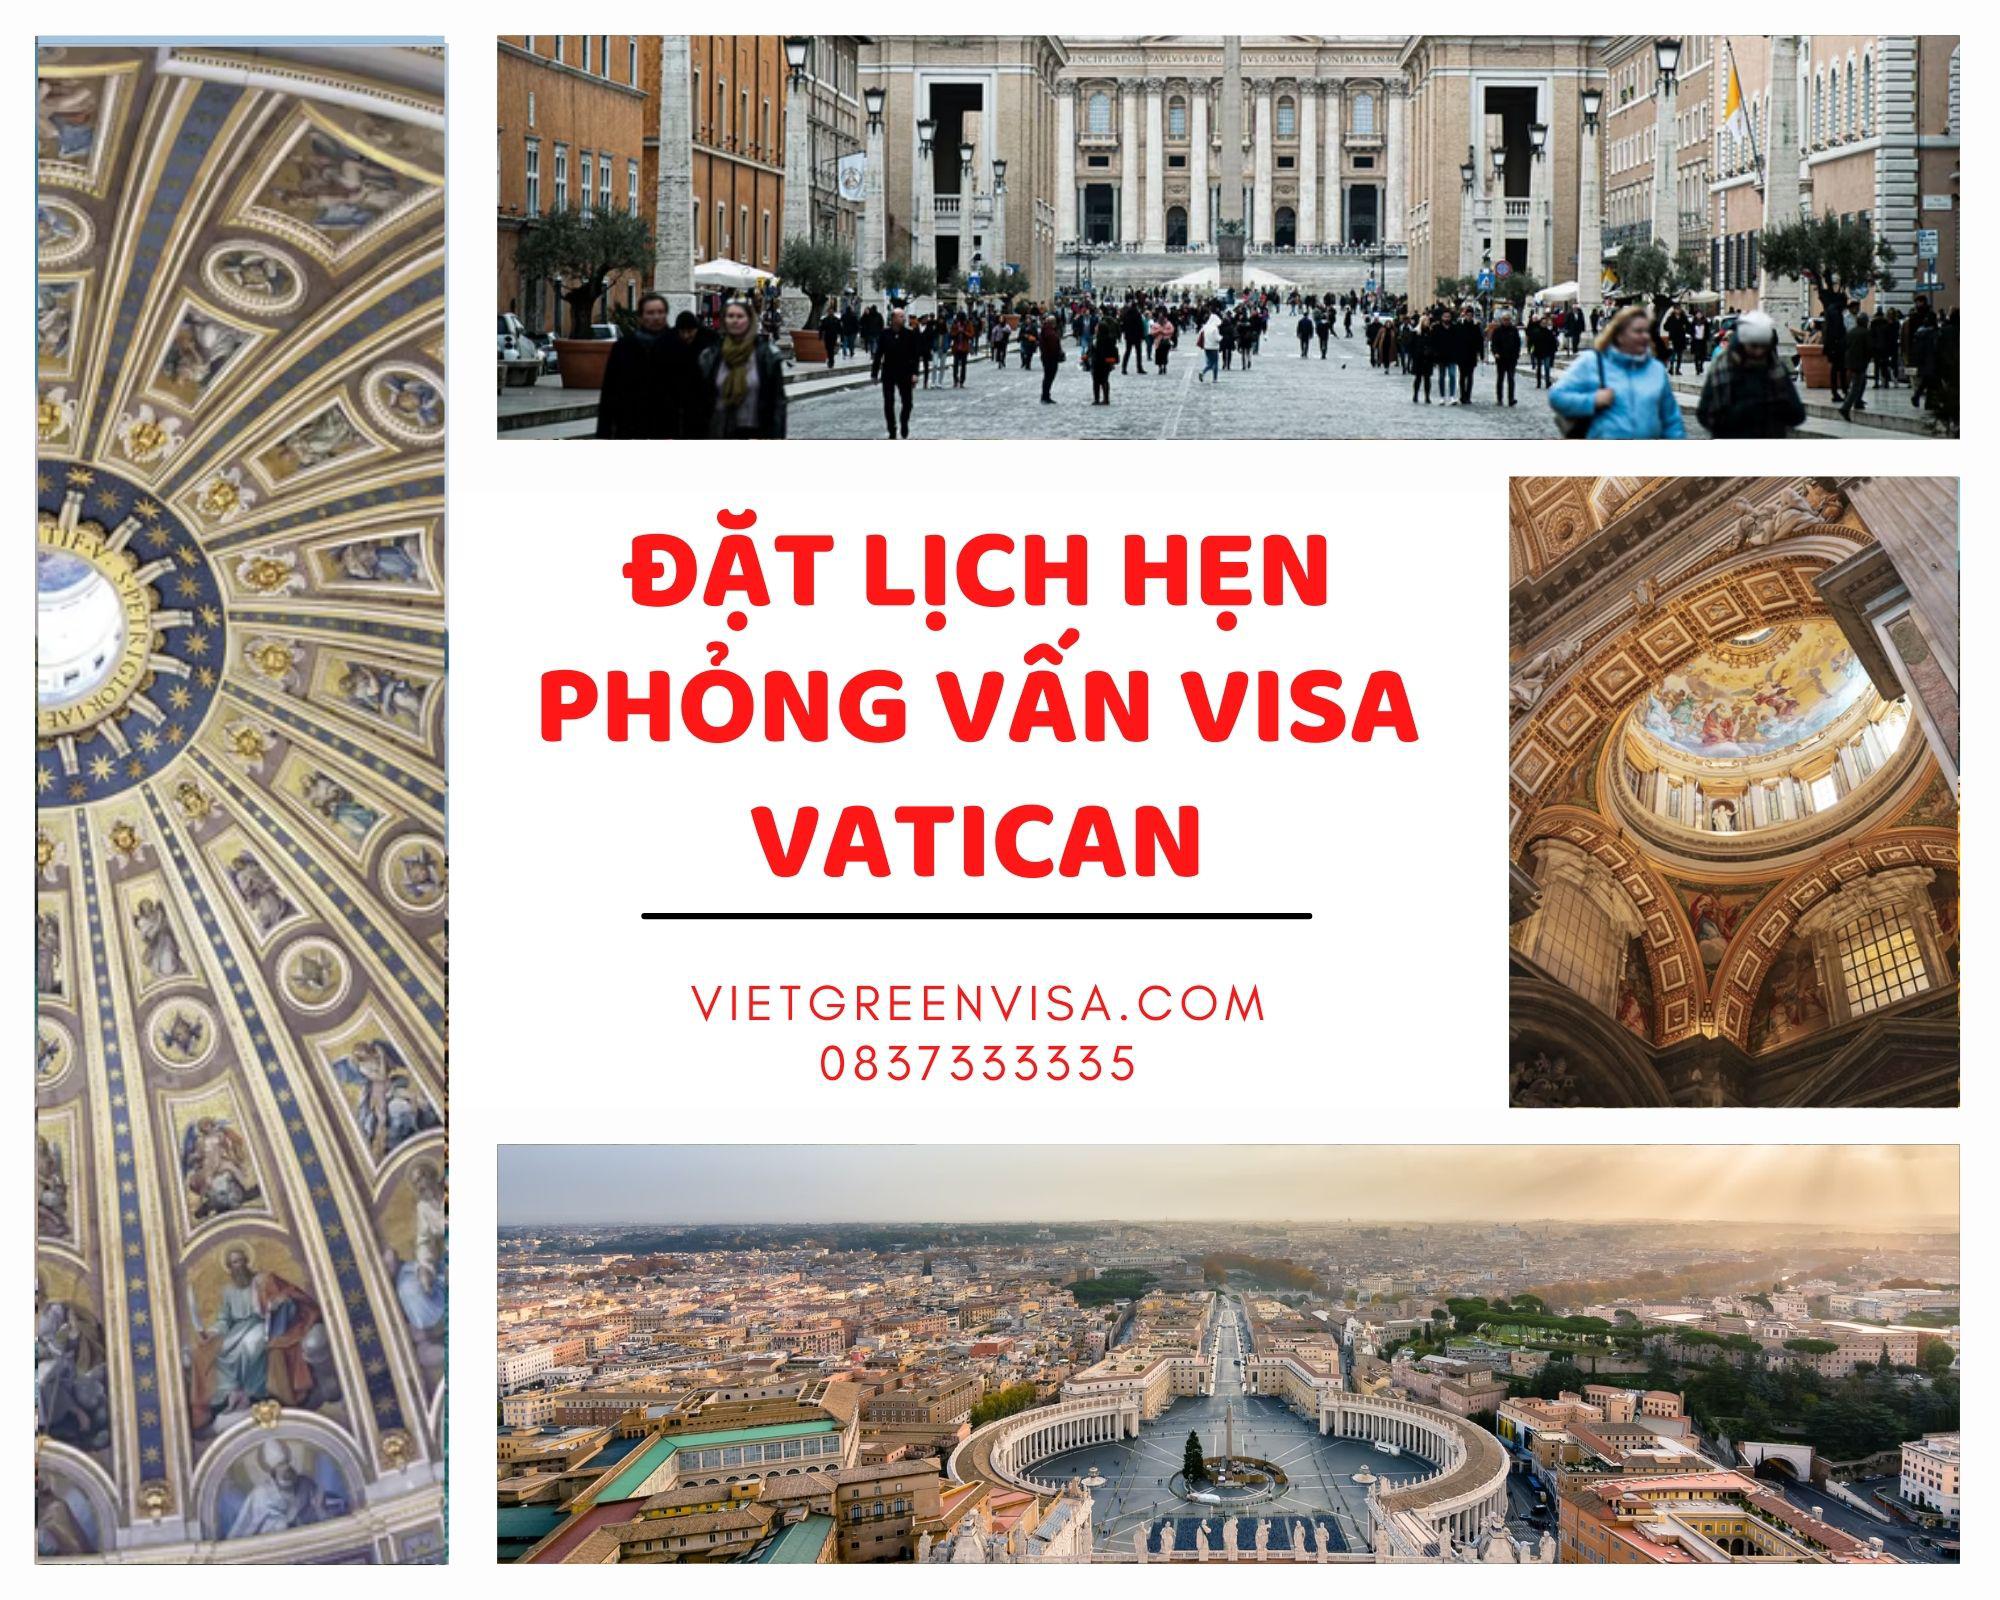 Tư vấn đặt lịch hẹn phỏng vấn visa Vatican